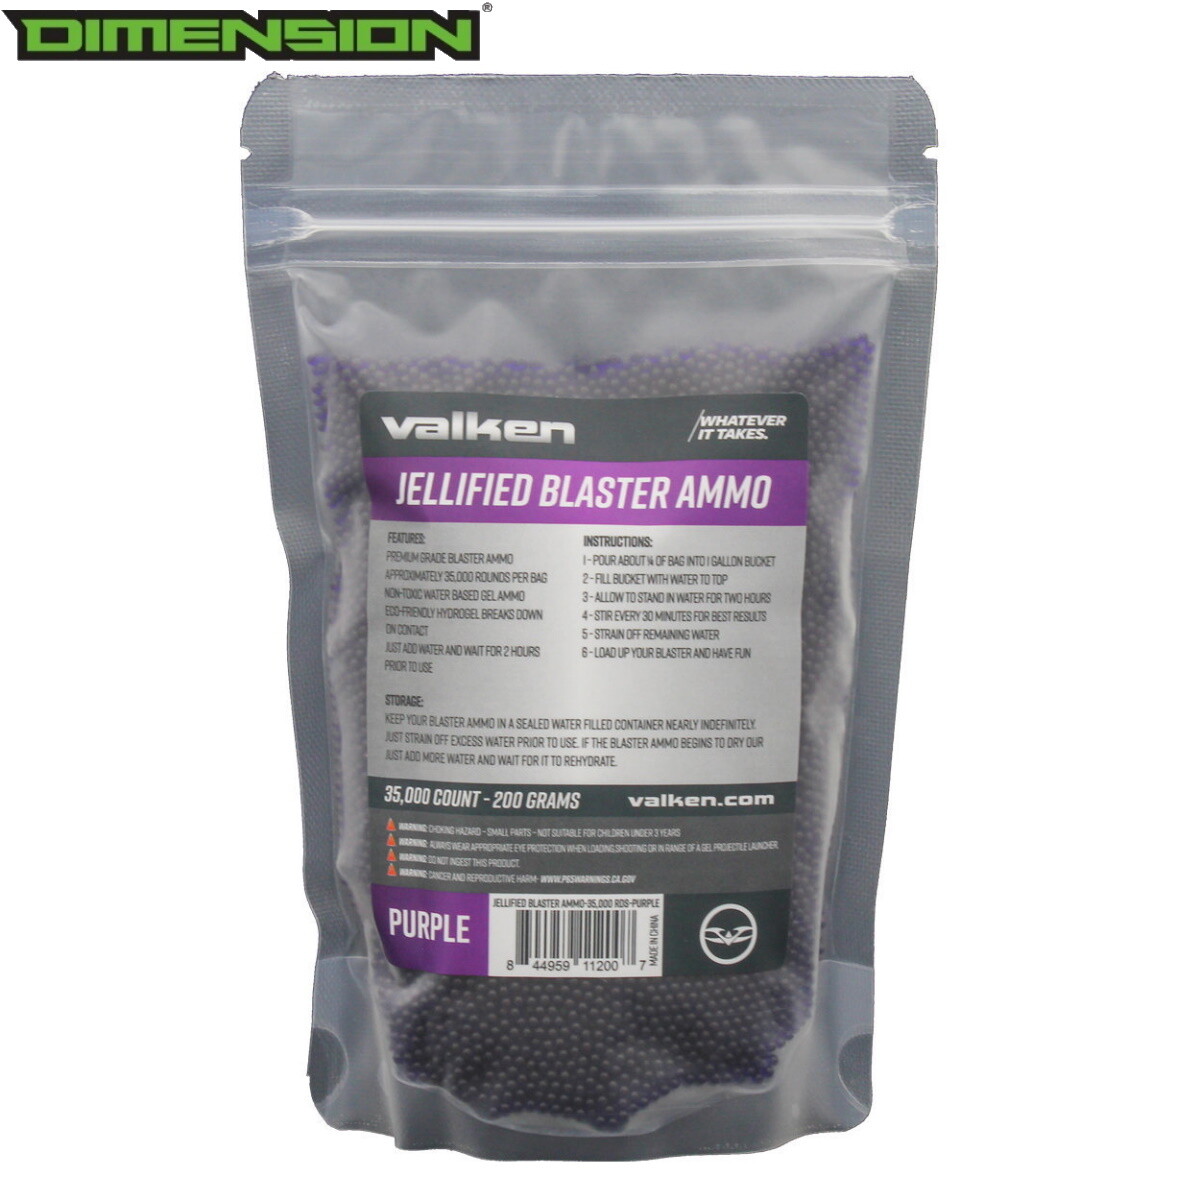 Valken Jellified Blaster Ammo -35,000rds - Purple